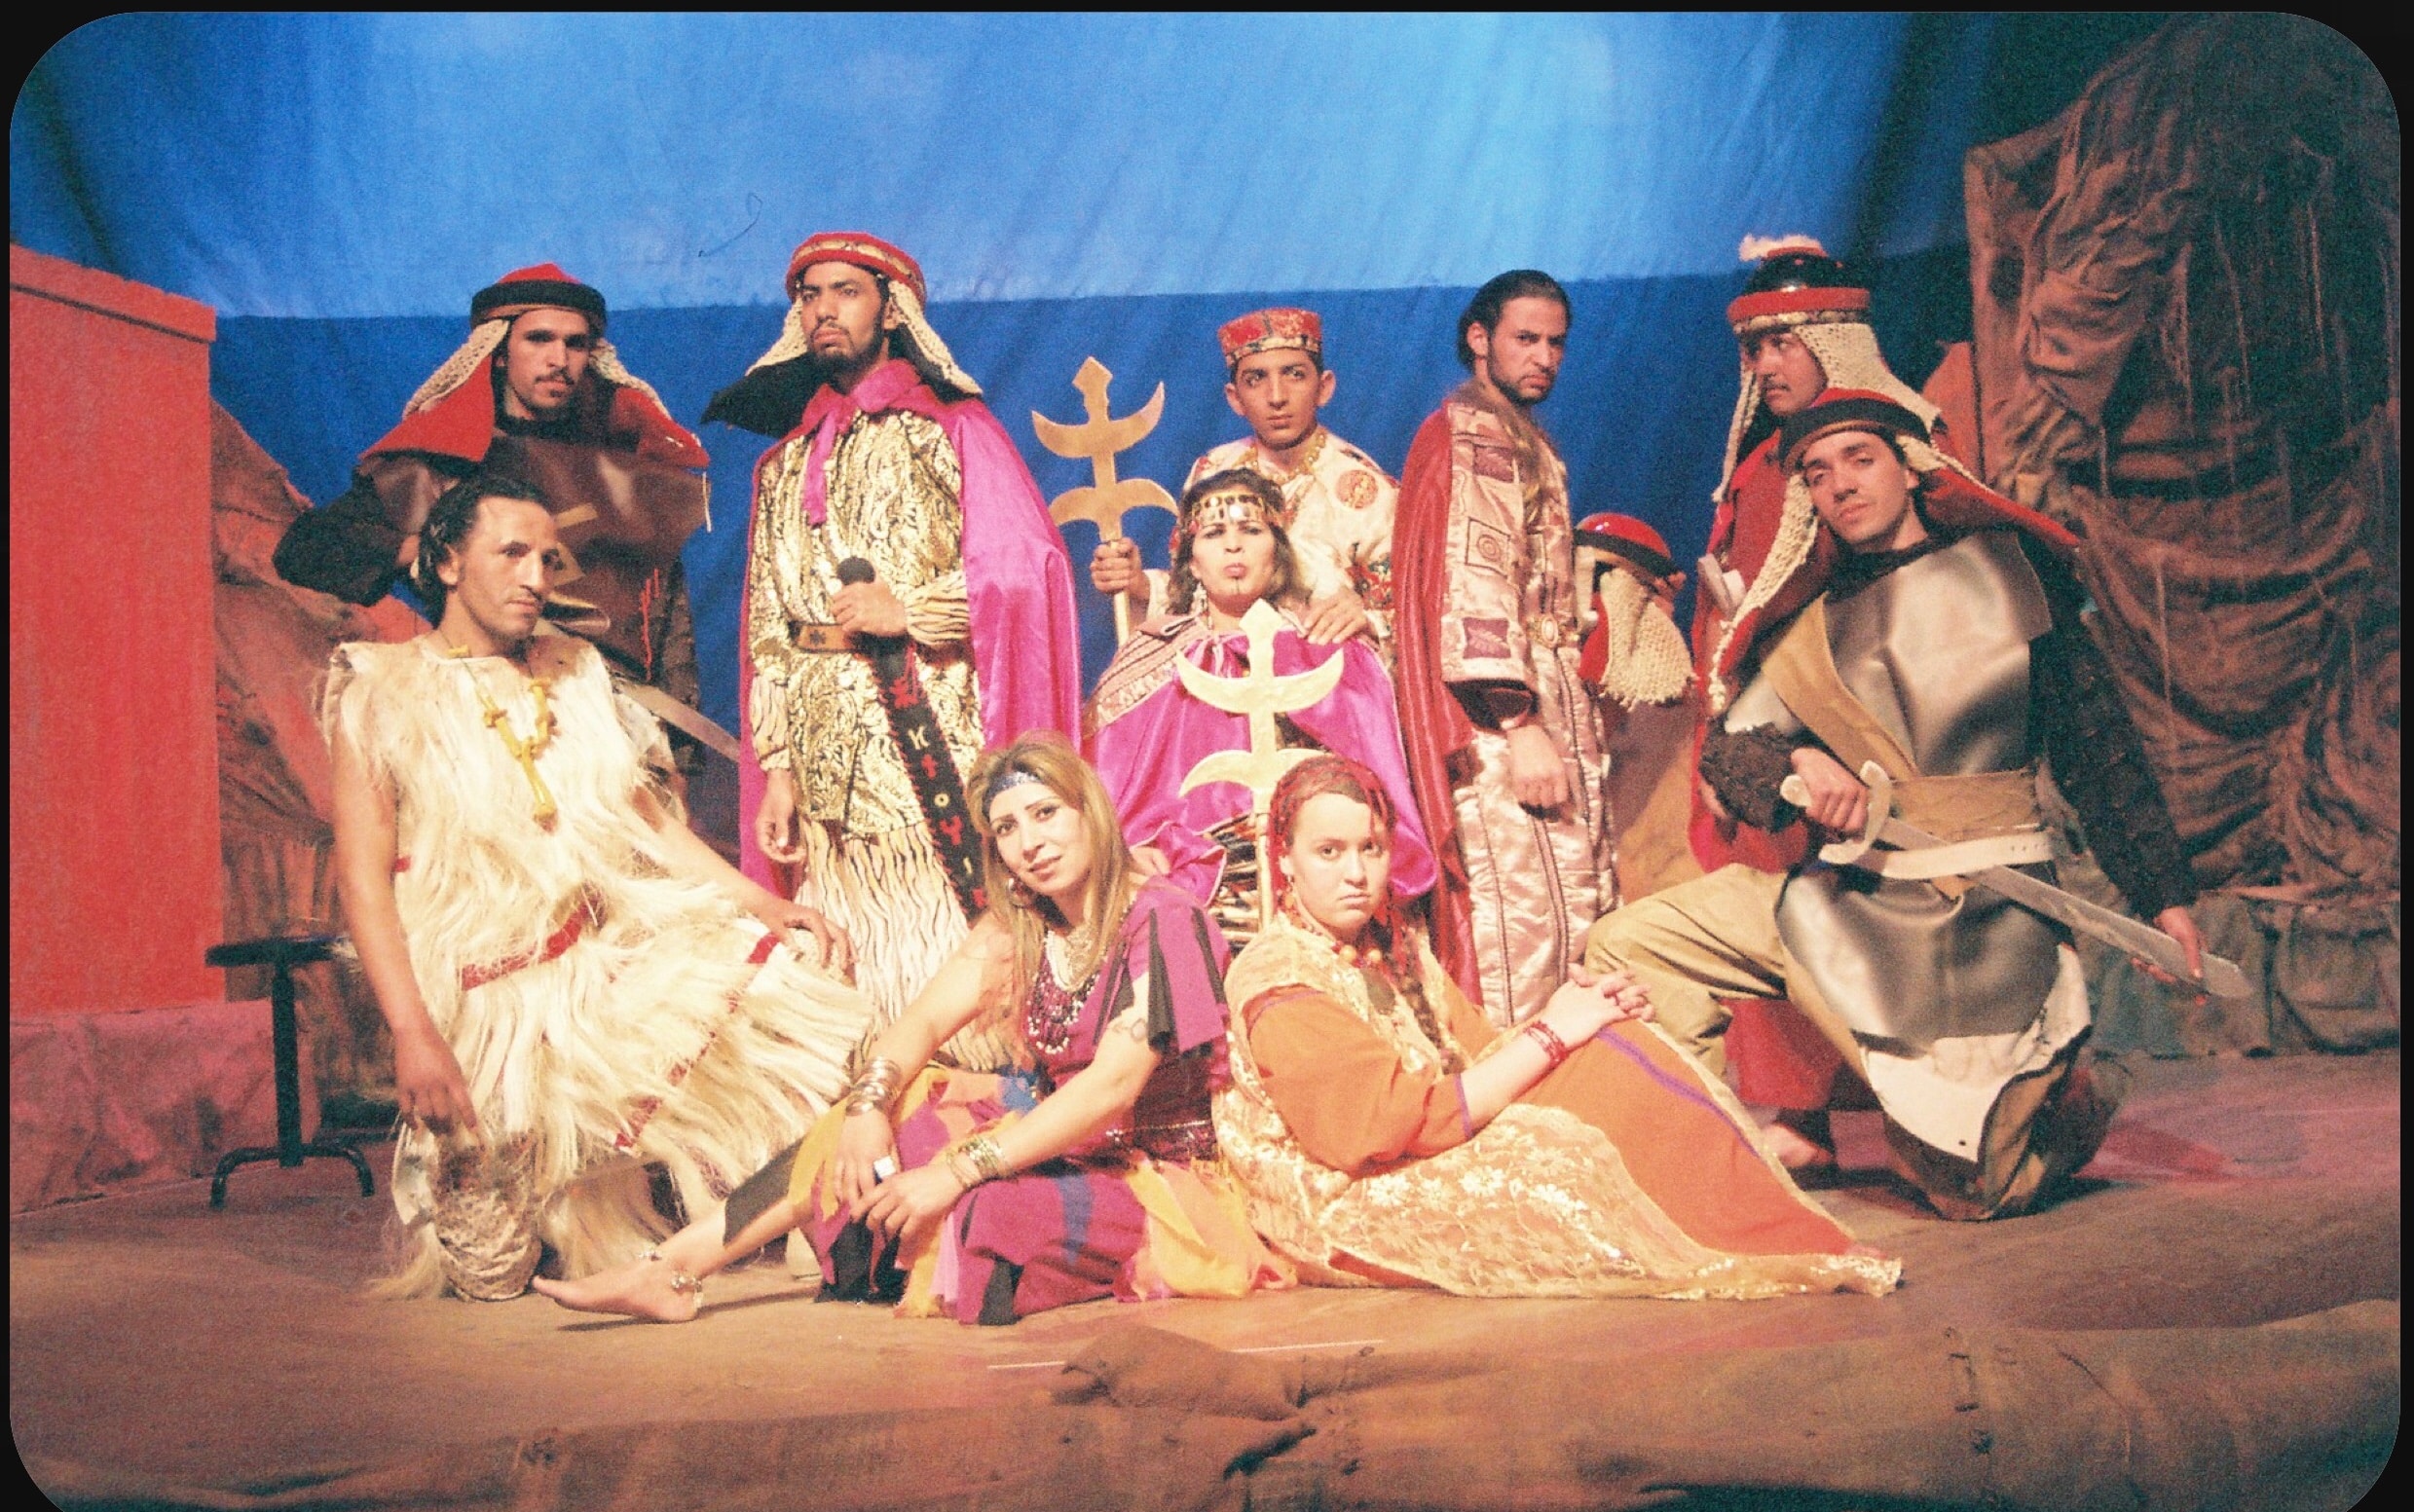 عروض جديدة بمهرجان المسرح الأمازيغي بالبيضاء